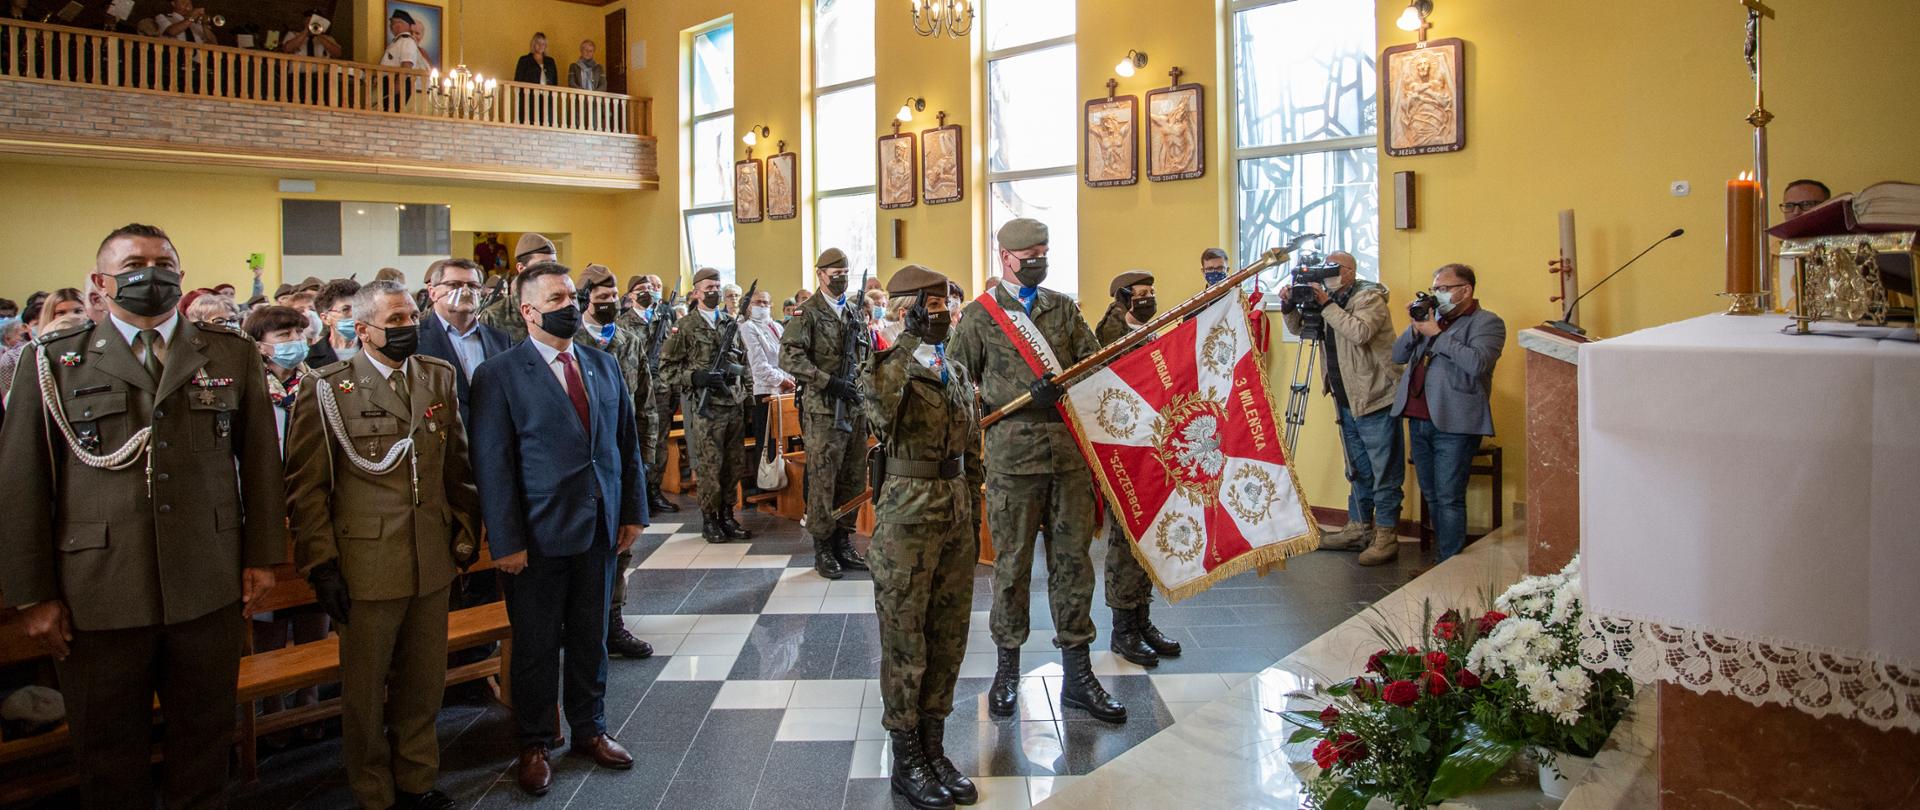 Żołnierze stoją w kościele i trzymają sztandar